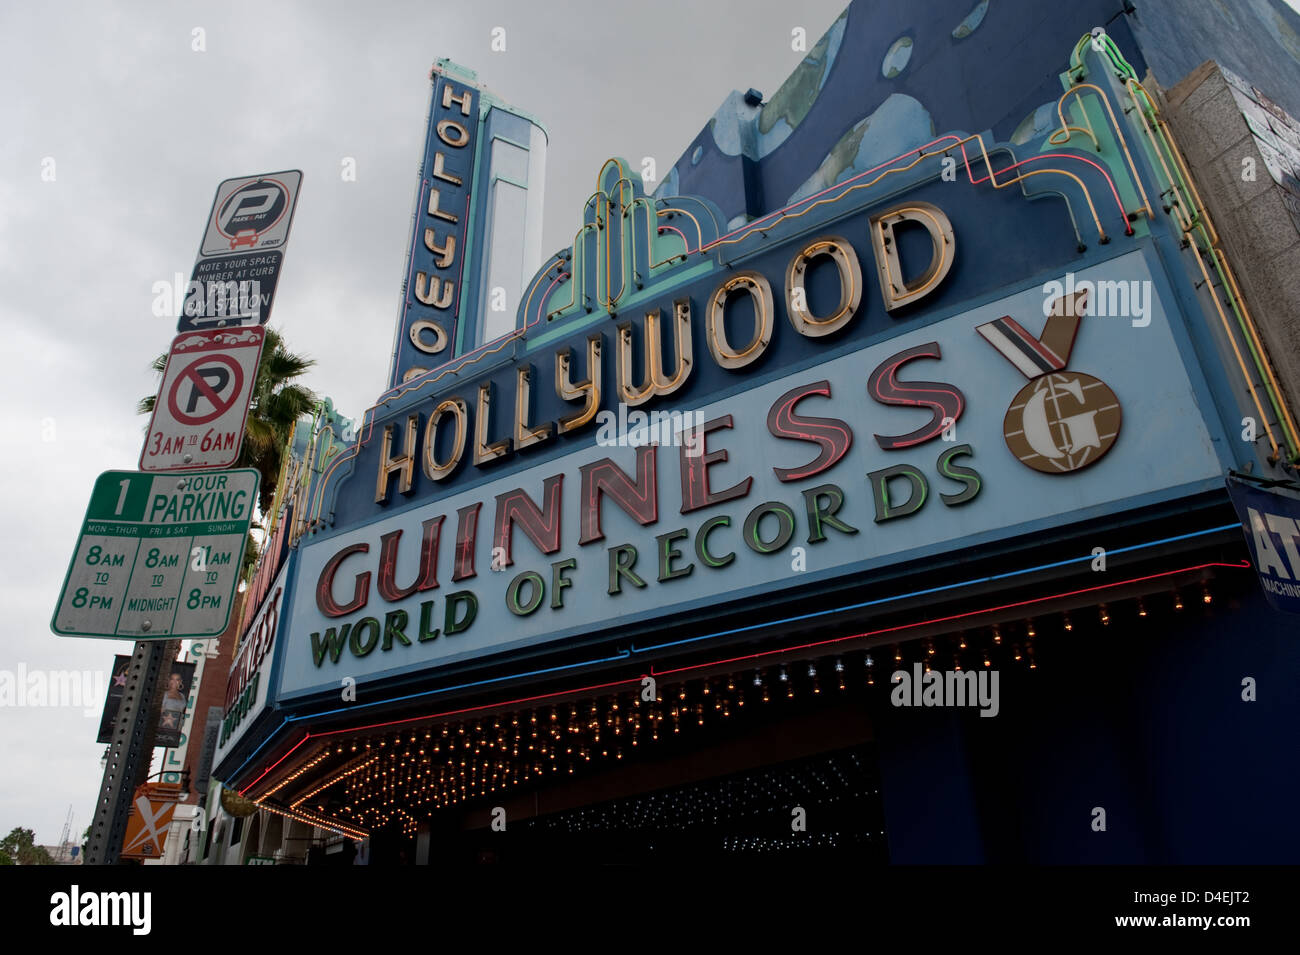 Los Angeles, EE.UU., la entrada del Hollywood de museo Guinness World Records Foto de stock